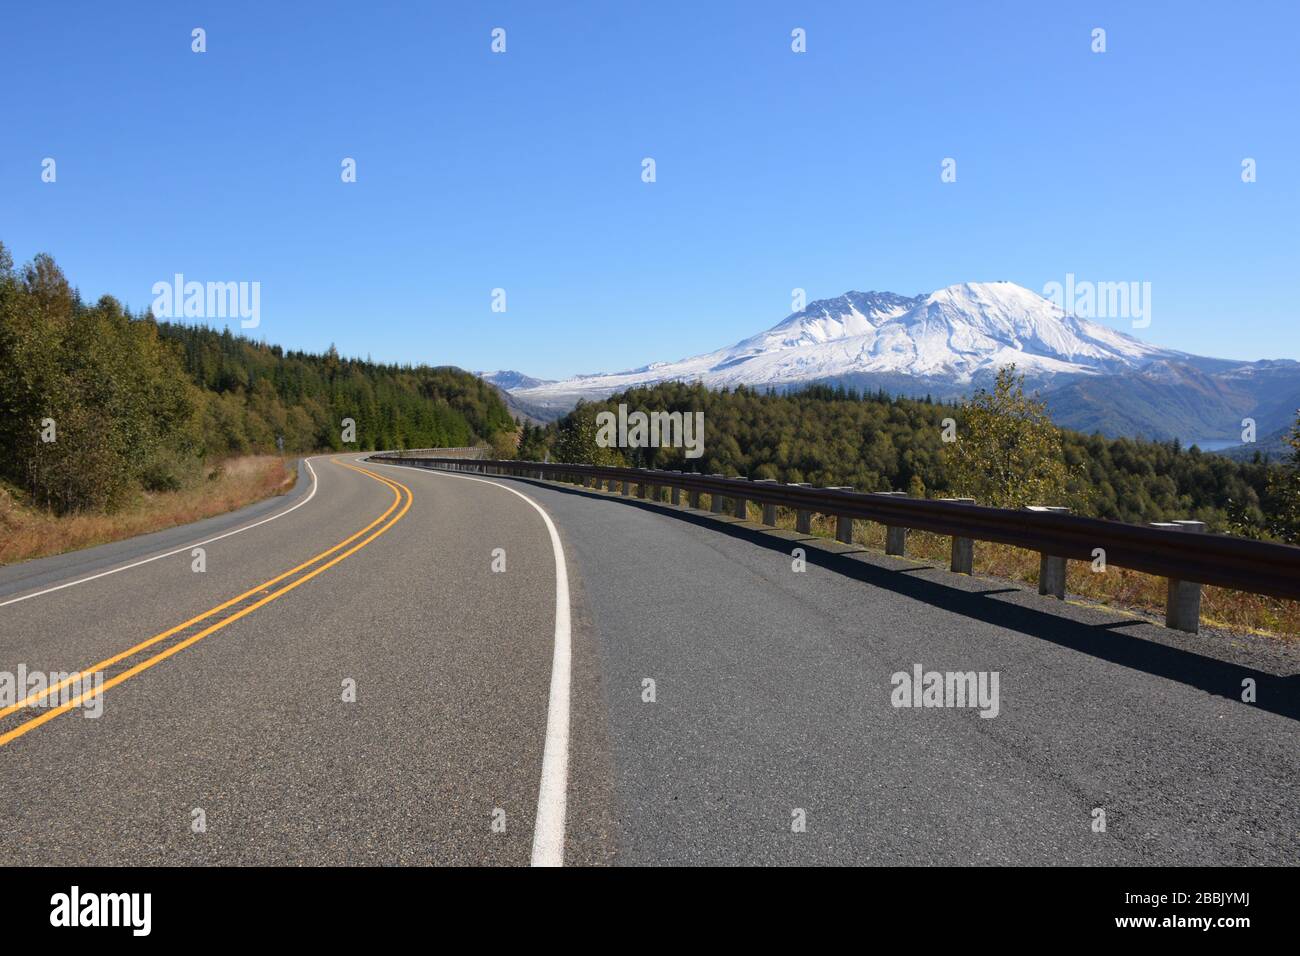 Vista sulla strada del monte St Helens dalla Route 504, Cowlitz County, Washington state, USA, con il lago Castle sulla destra. Foto Stock